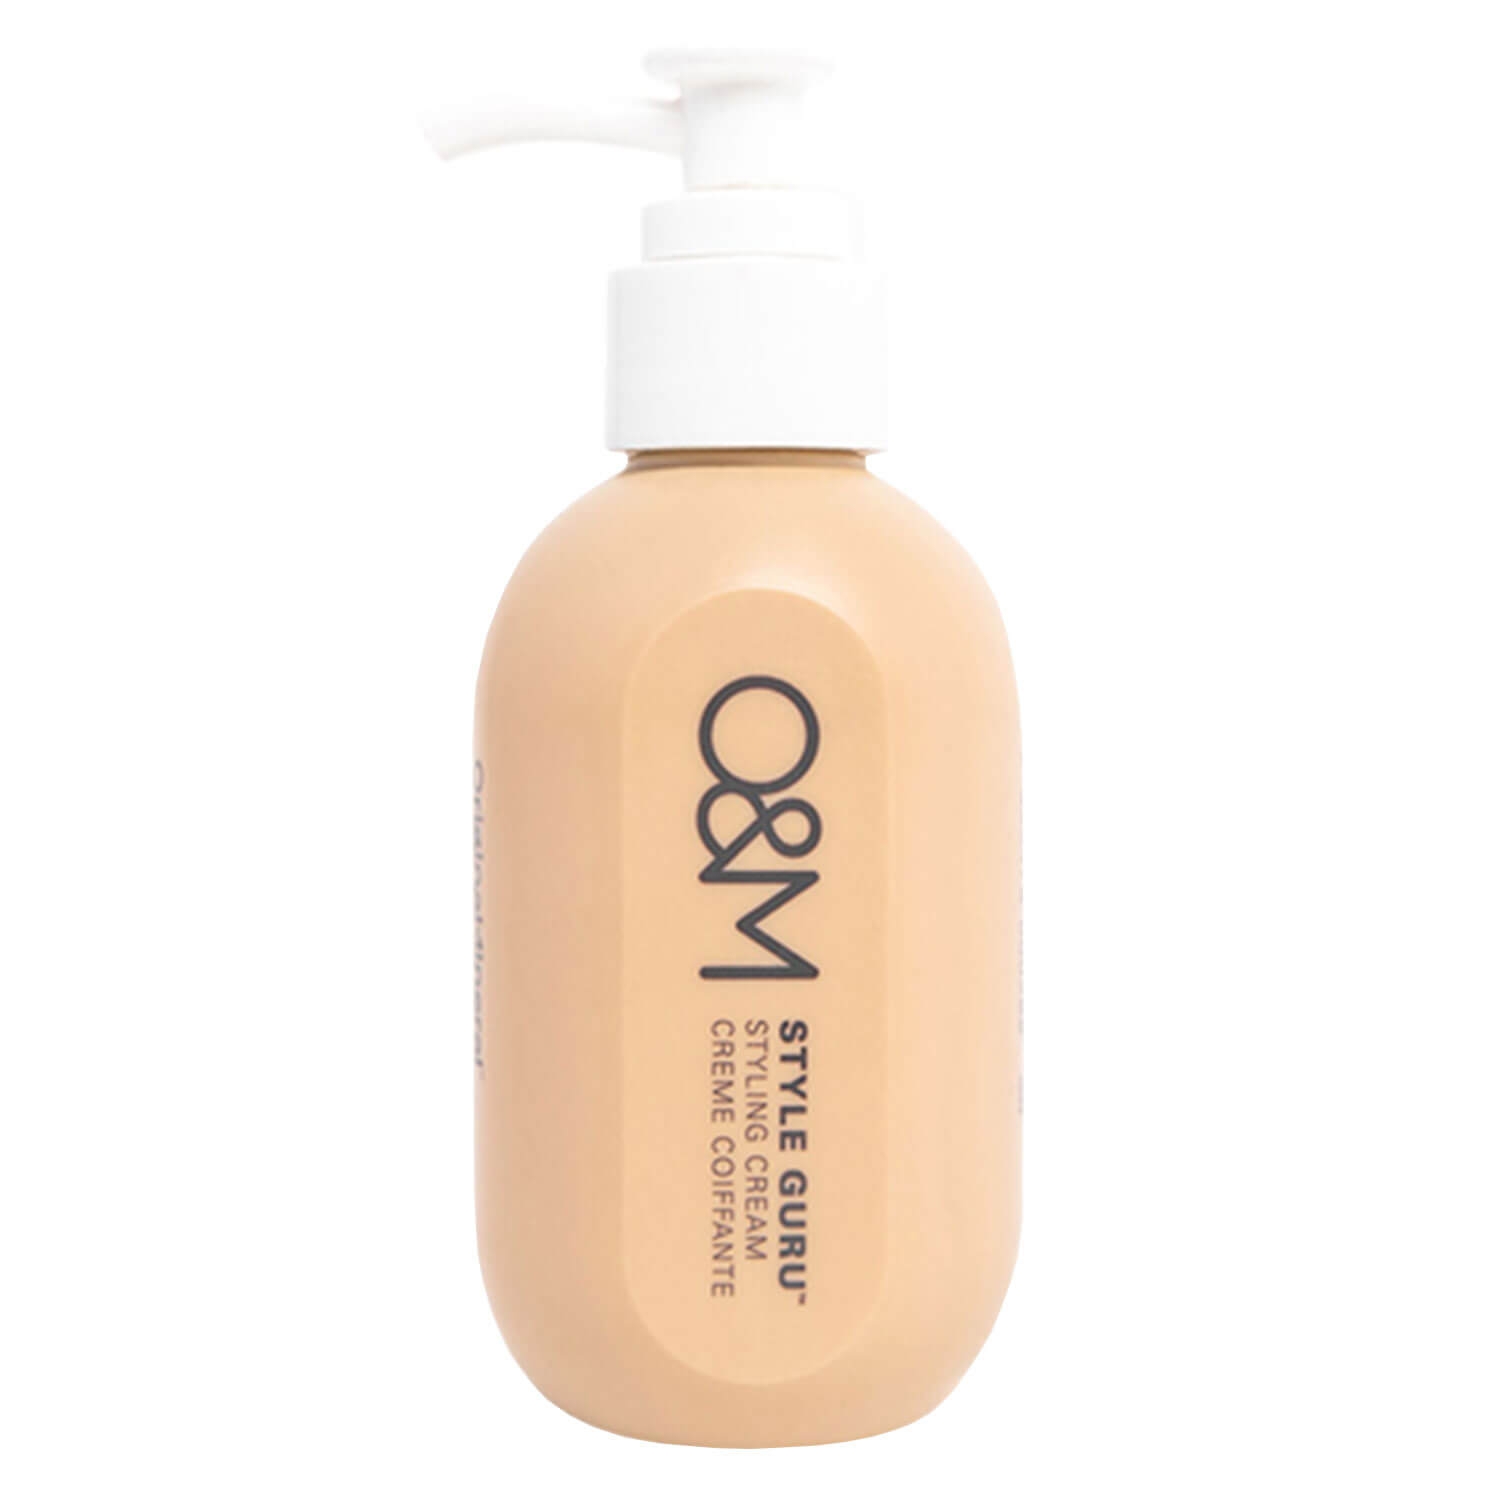 Produktbild von O&M Styling - Style Guru Styling Cream